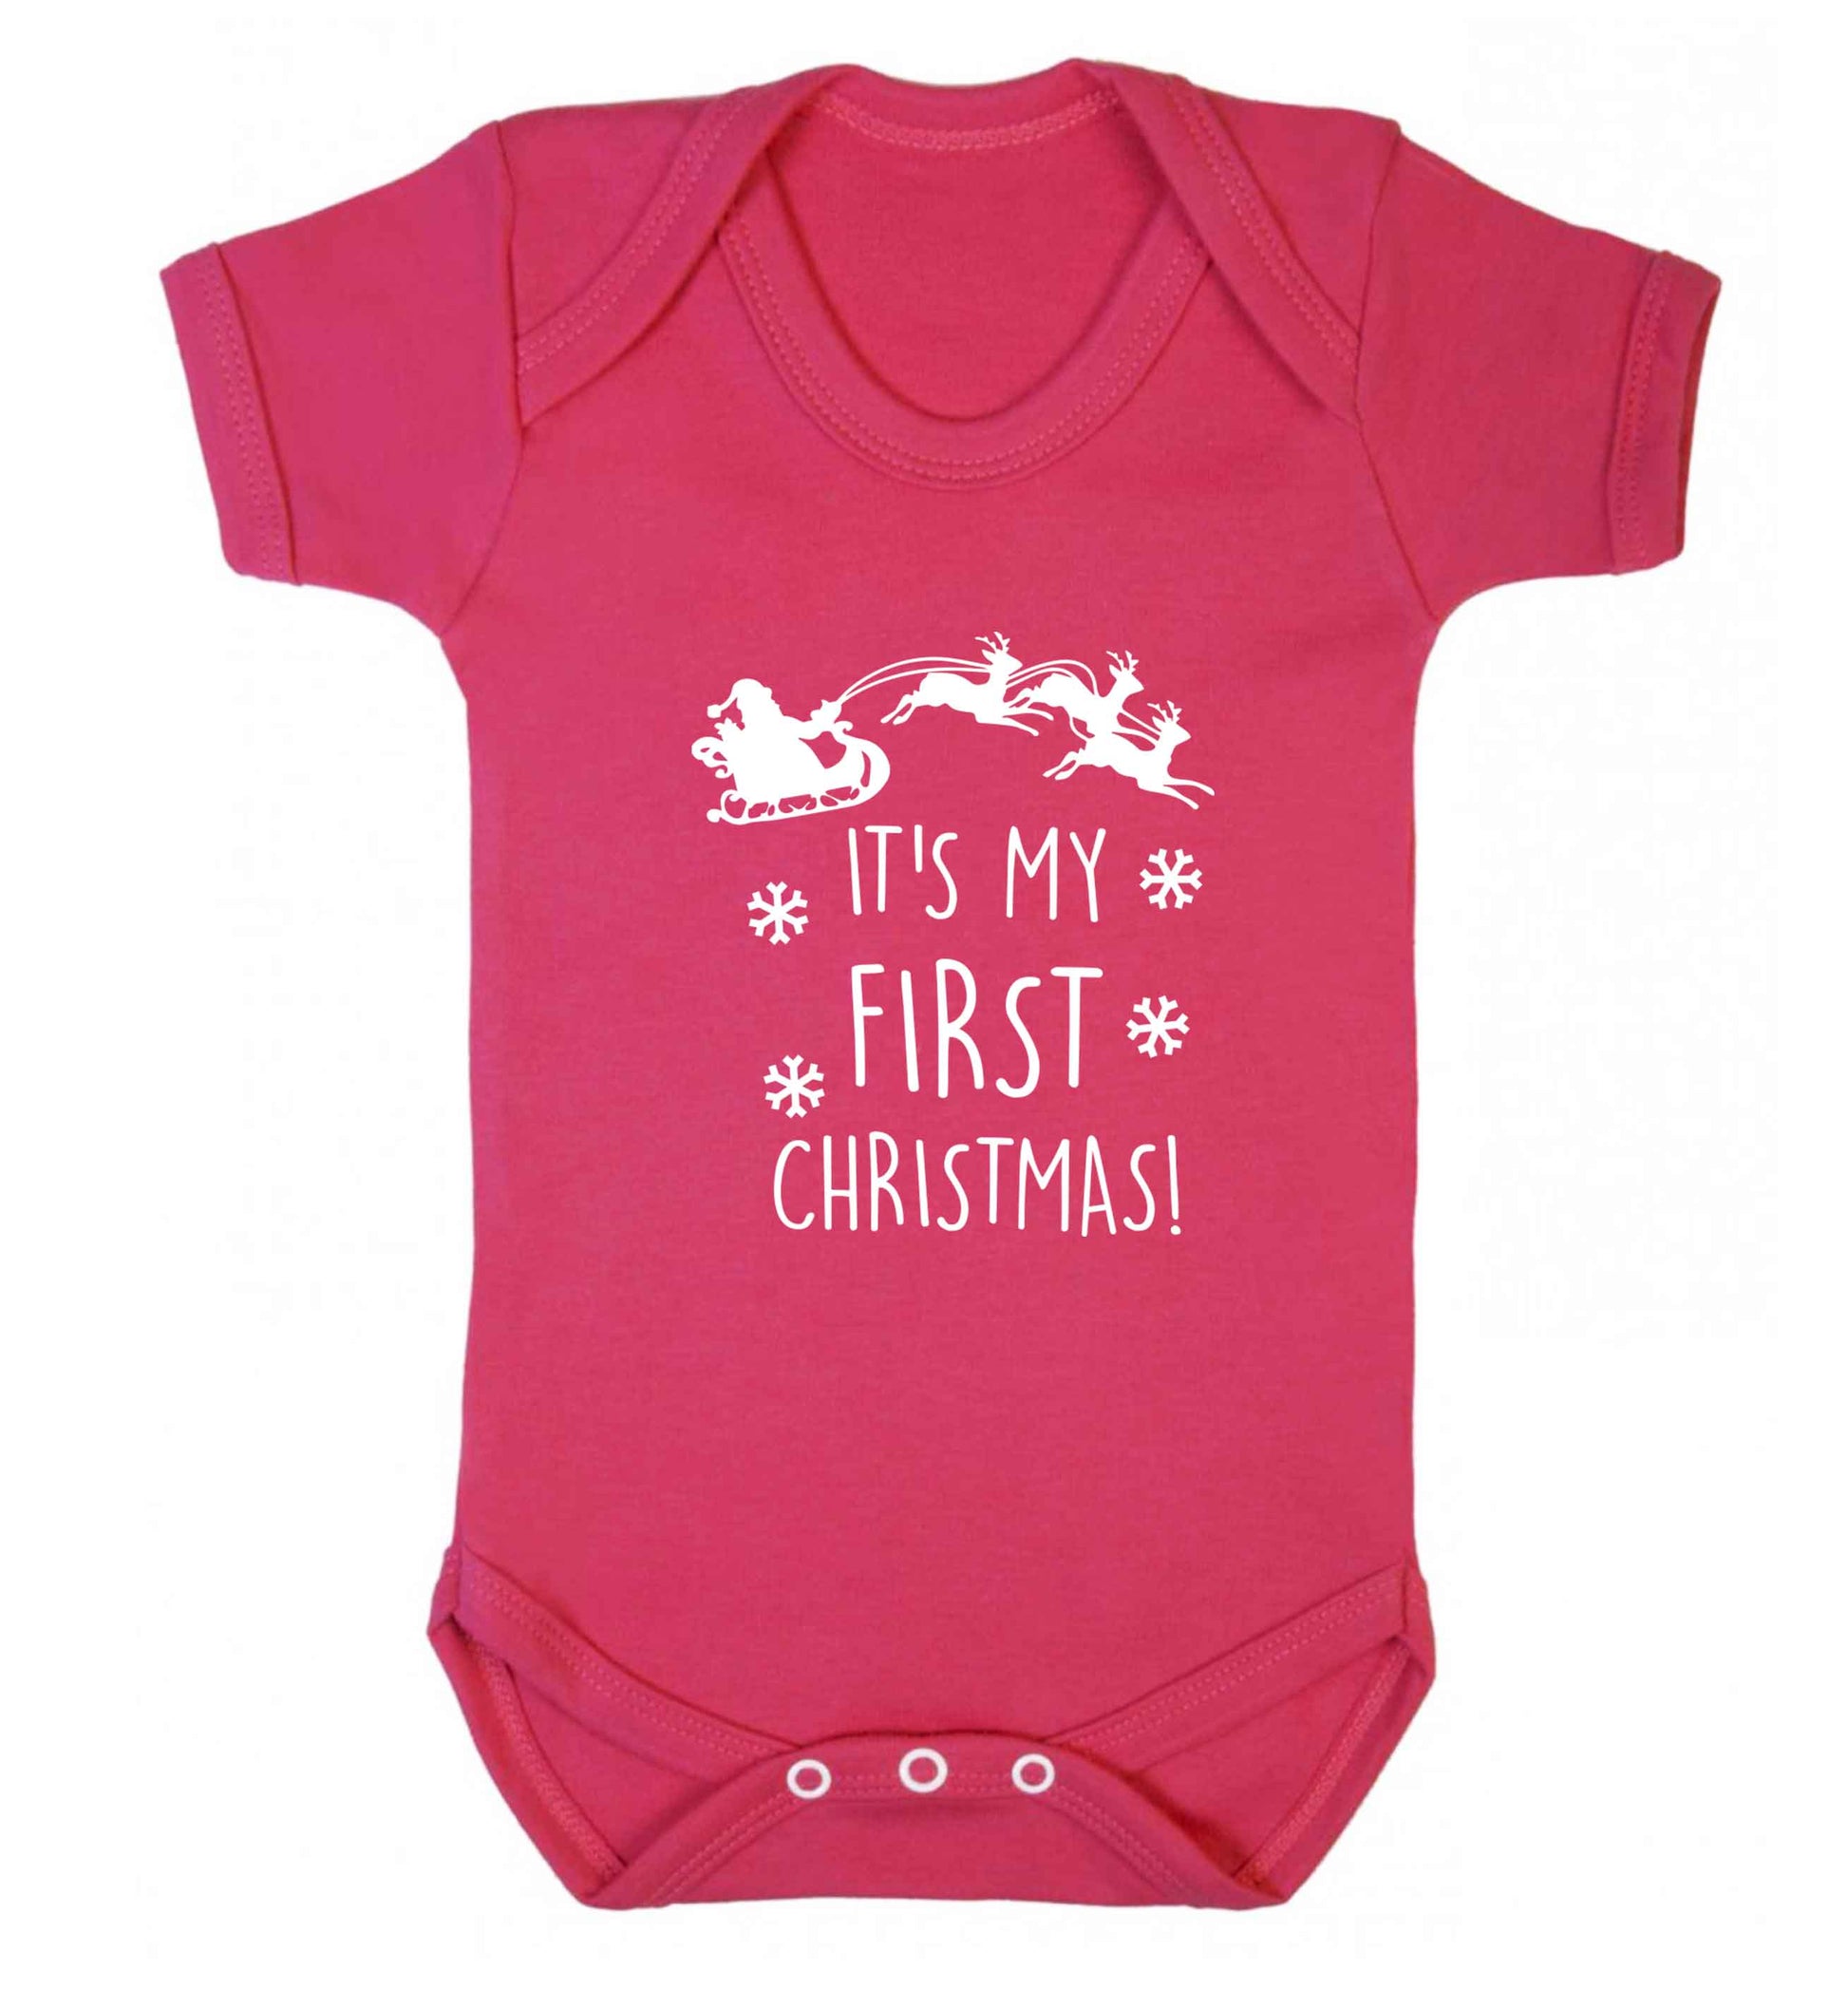 It's my first Christmas - Santa sleigh text baby vest dark pink 18-24 months